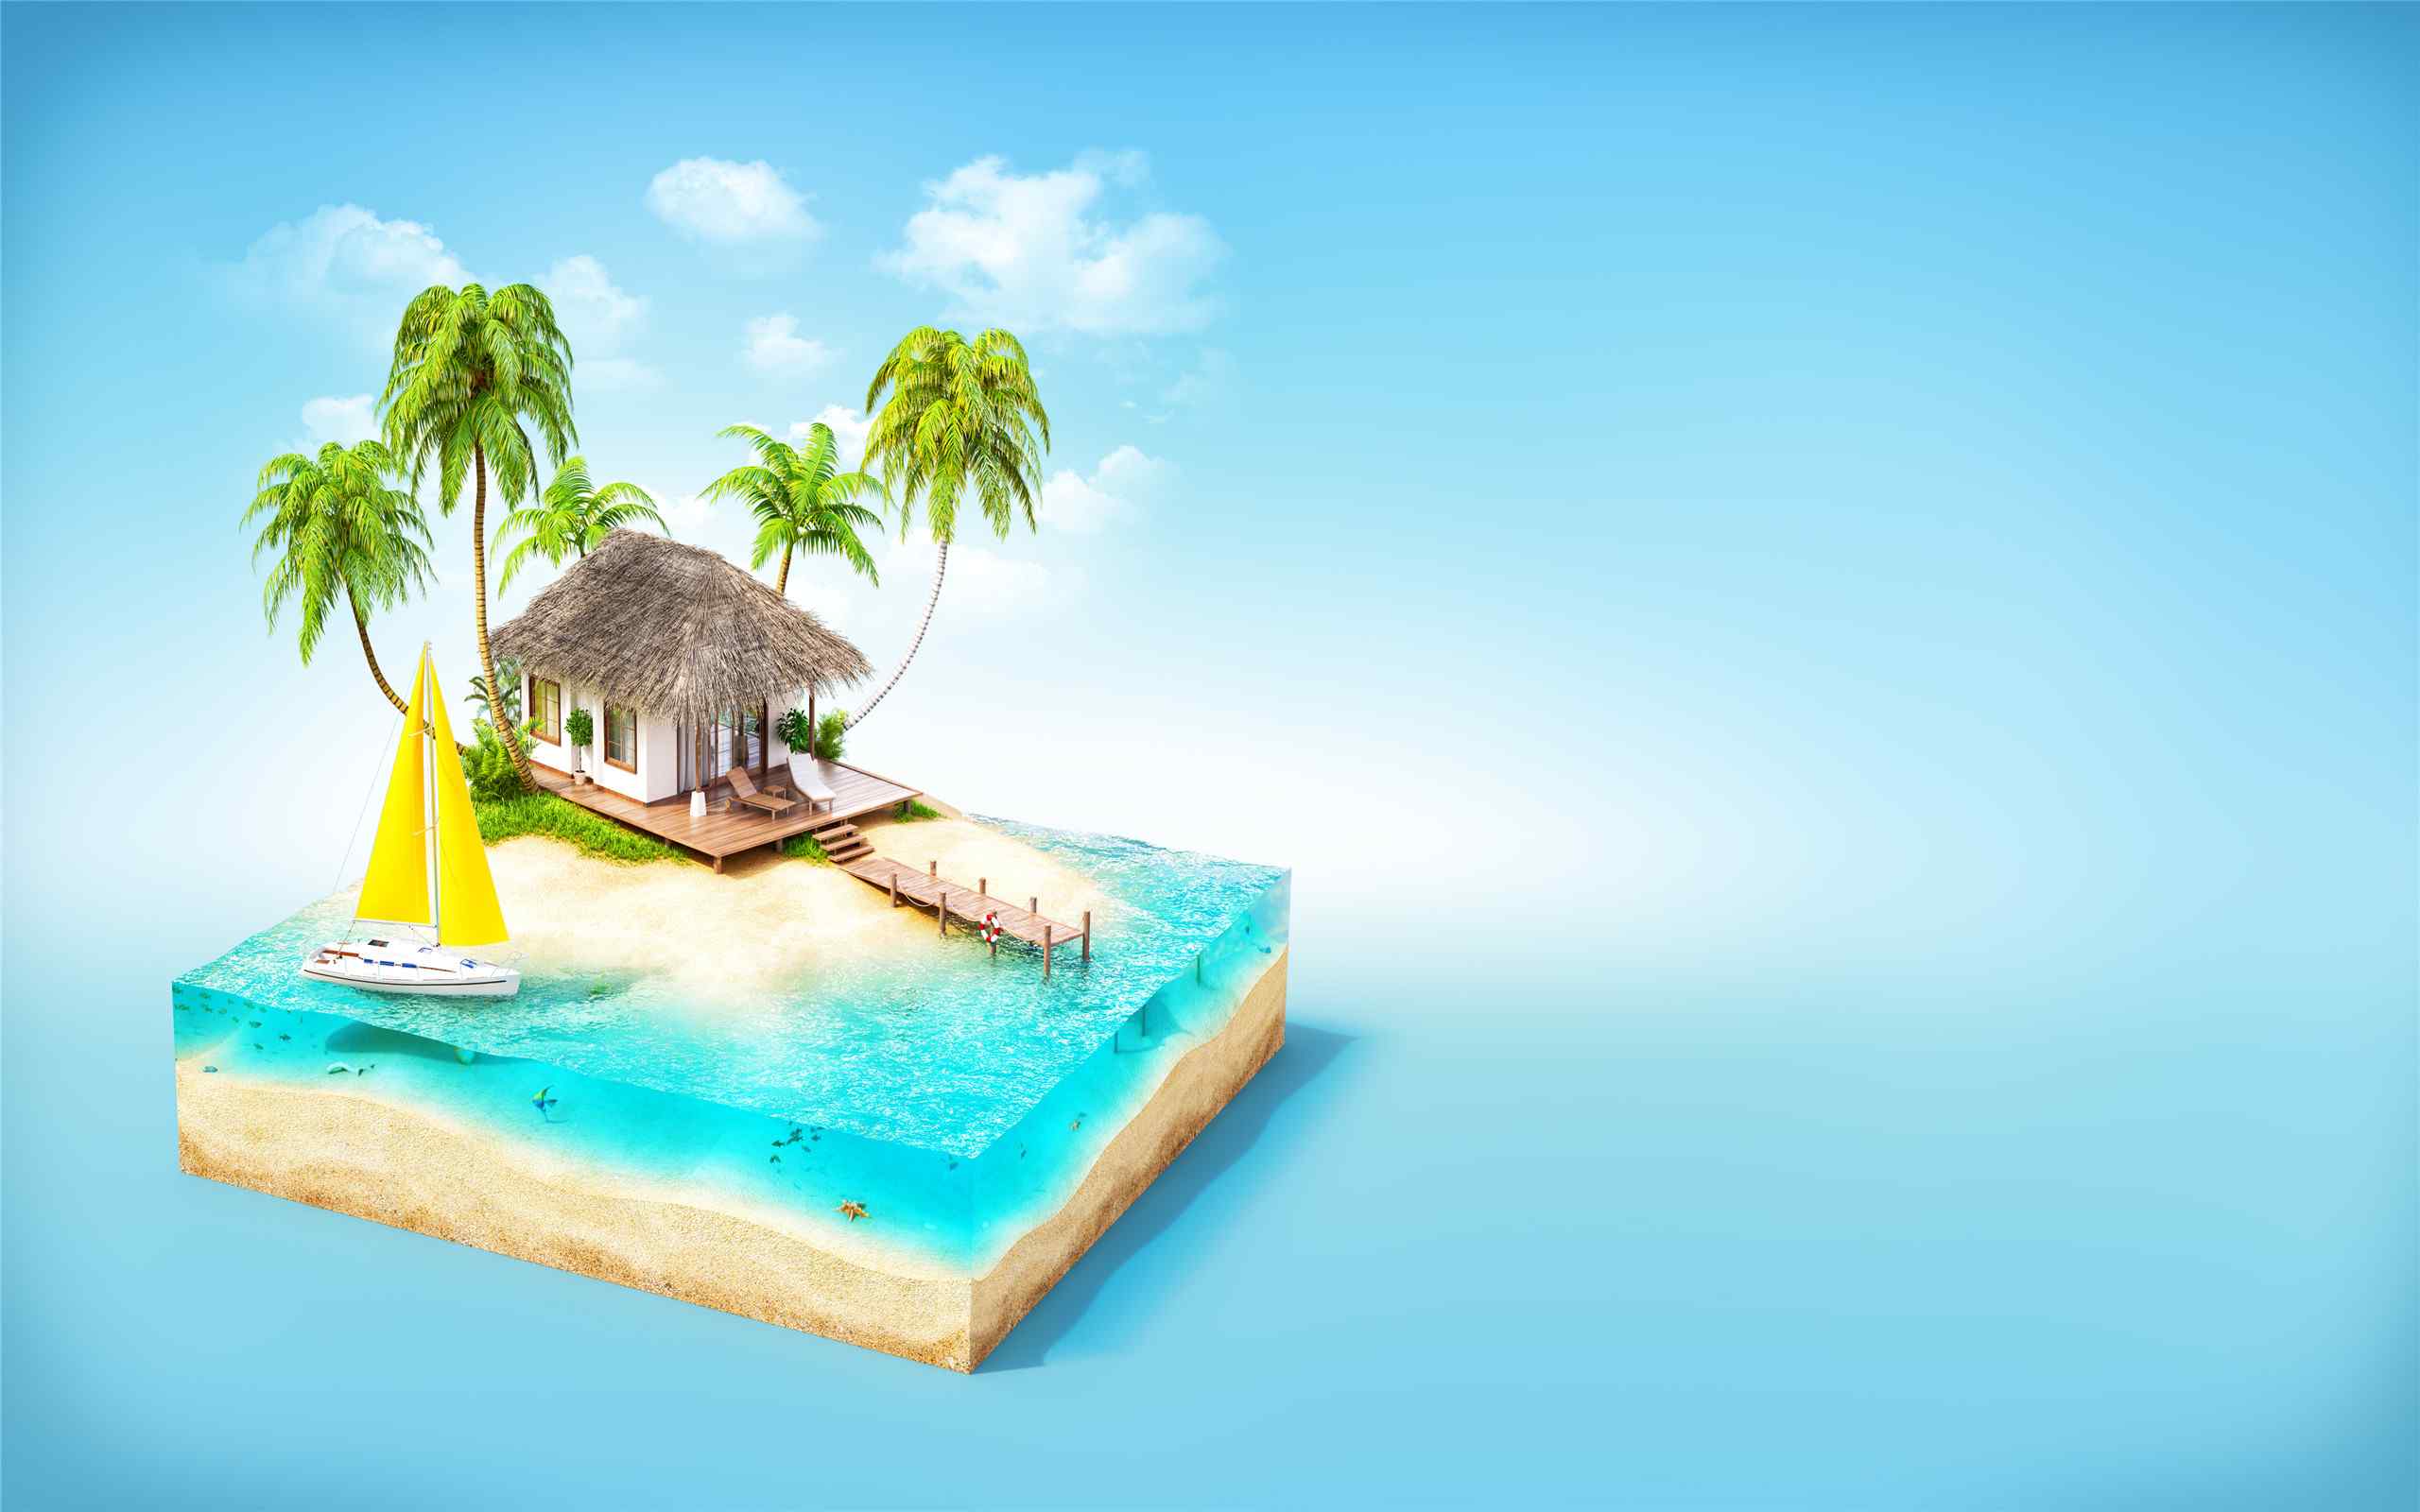 立体创意设计蓝色小岛海岛精选桌面壁纸图片大全